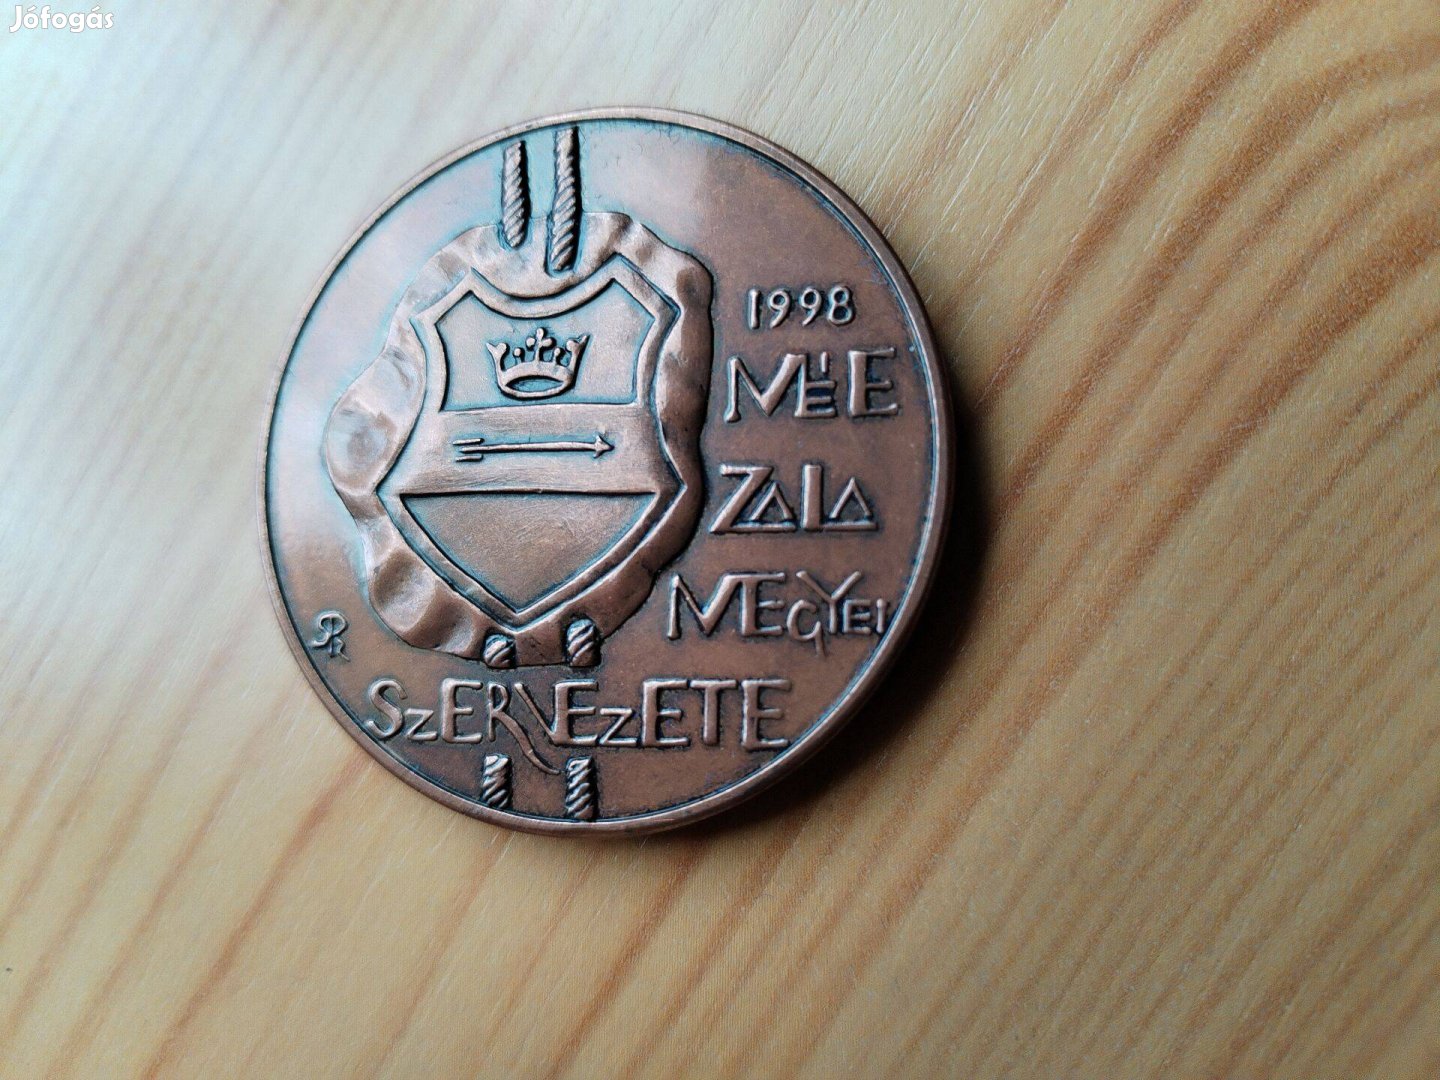 MÉE. Zalaegerszegi Szervezete 1998 bronz érem csak 200 db